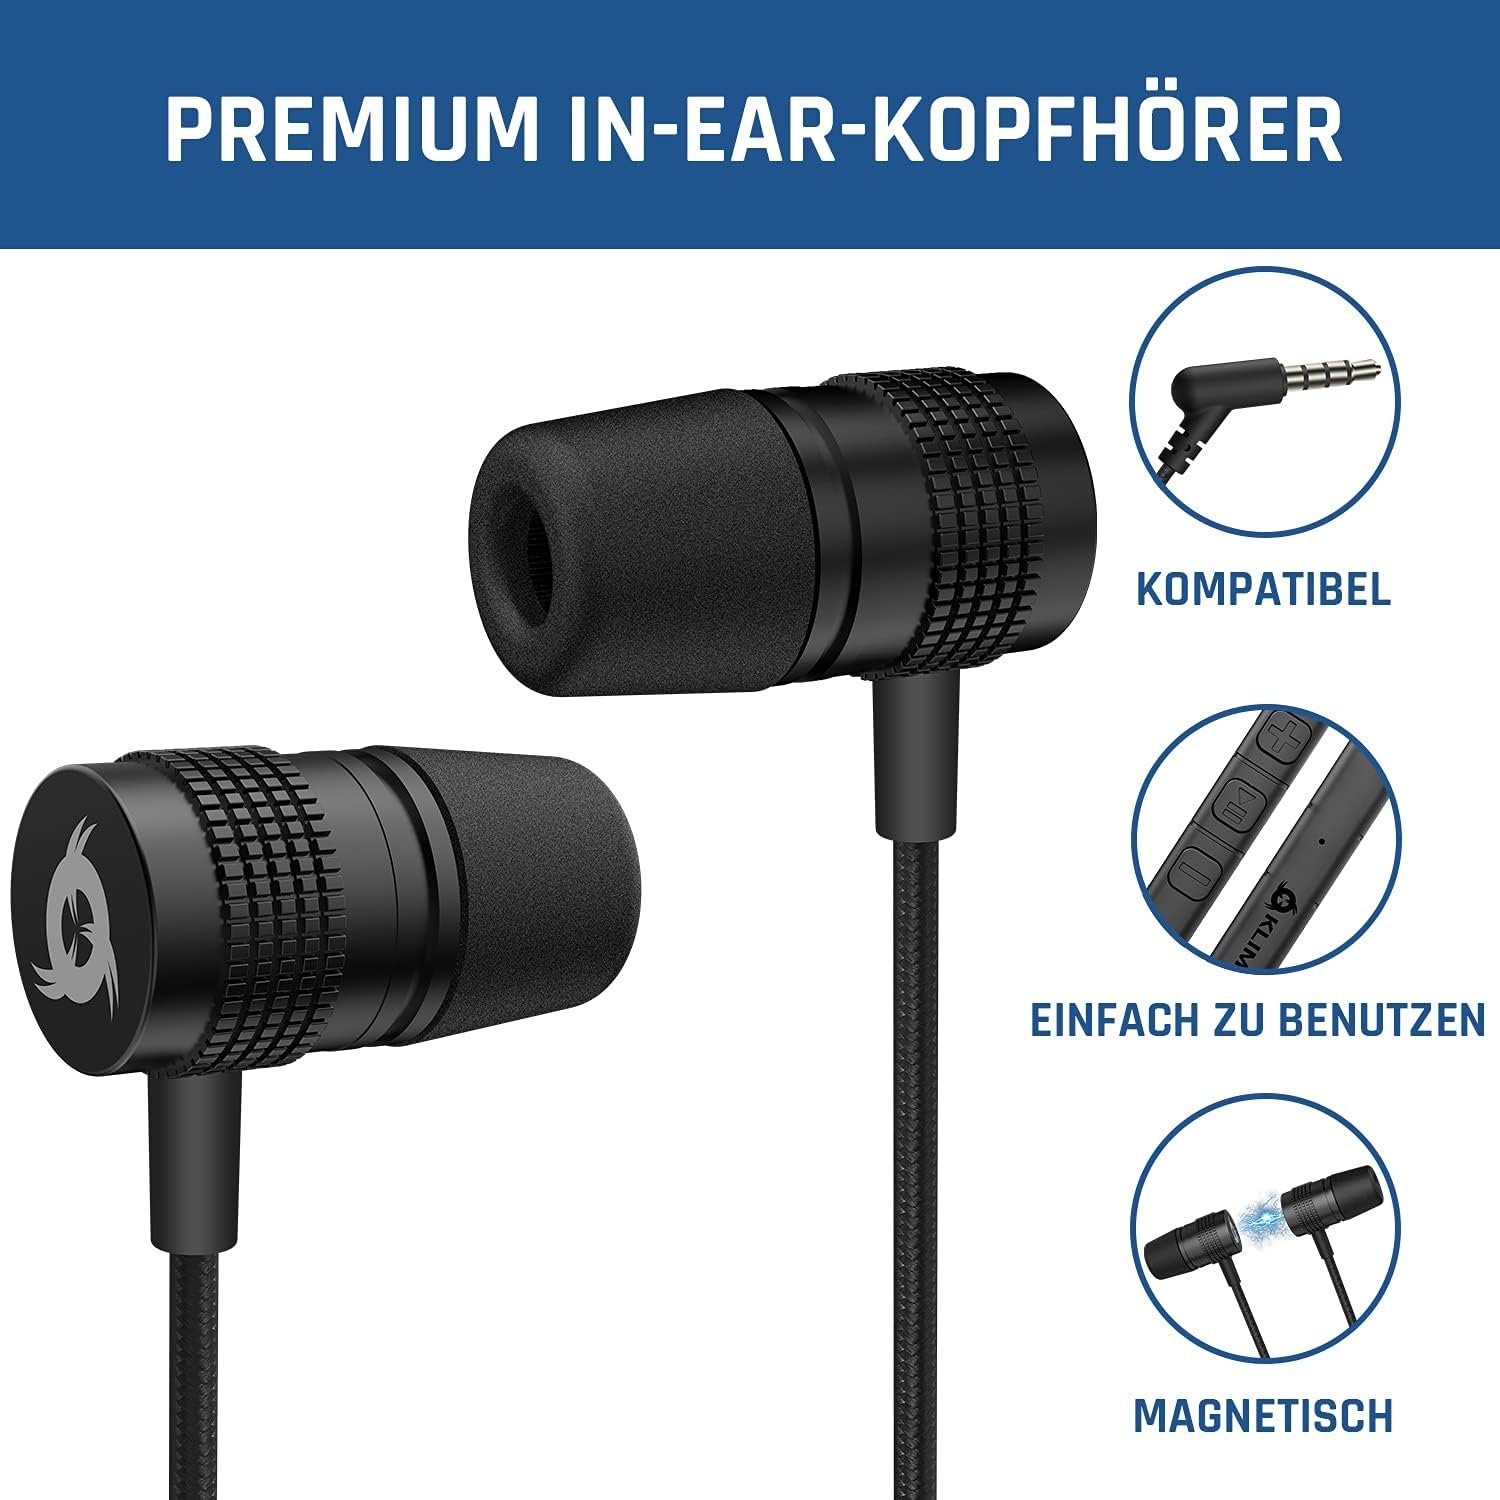 (3,5 F1 Klinke) In-Ear-Kopfhörer KLIM mm